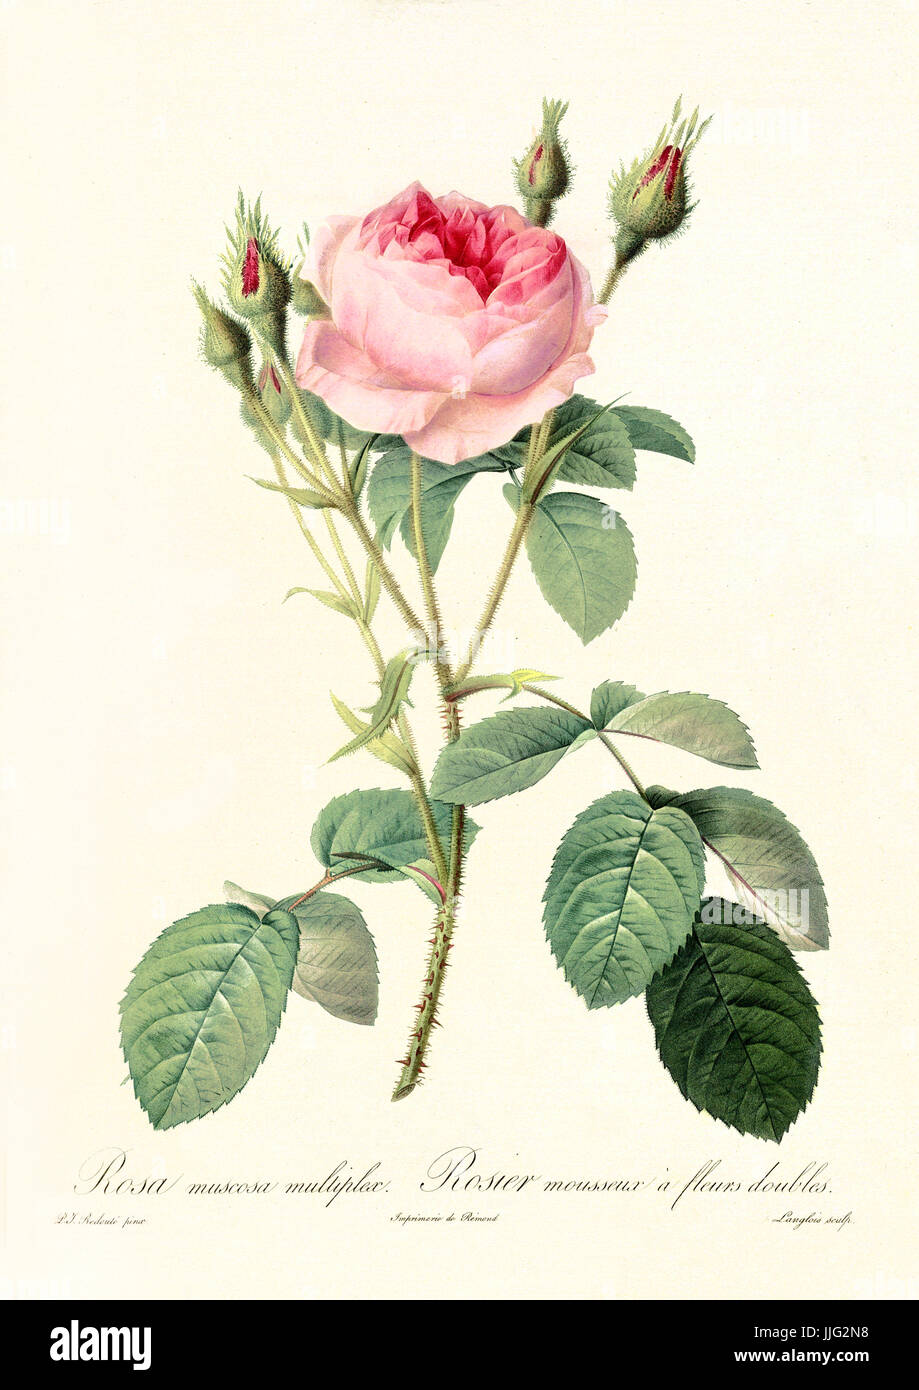 Vecchia illustrazione di Rosa muscosa multiplex. Creato da P. R. Redoute, pubblicato su Les Roses, Imp. Firmin Didot, Parigi, 1817-24 Foto Stock